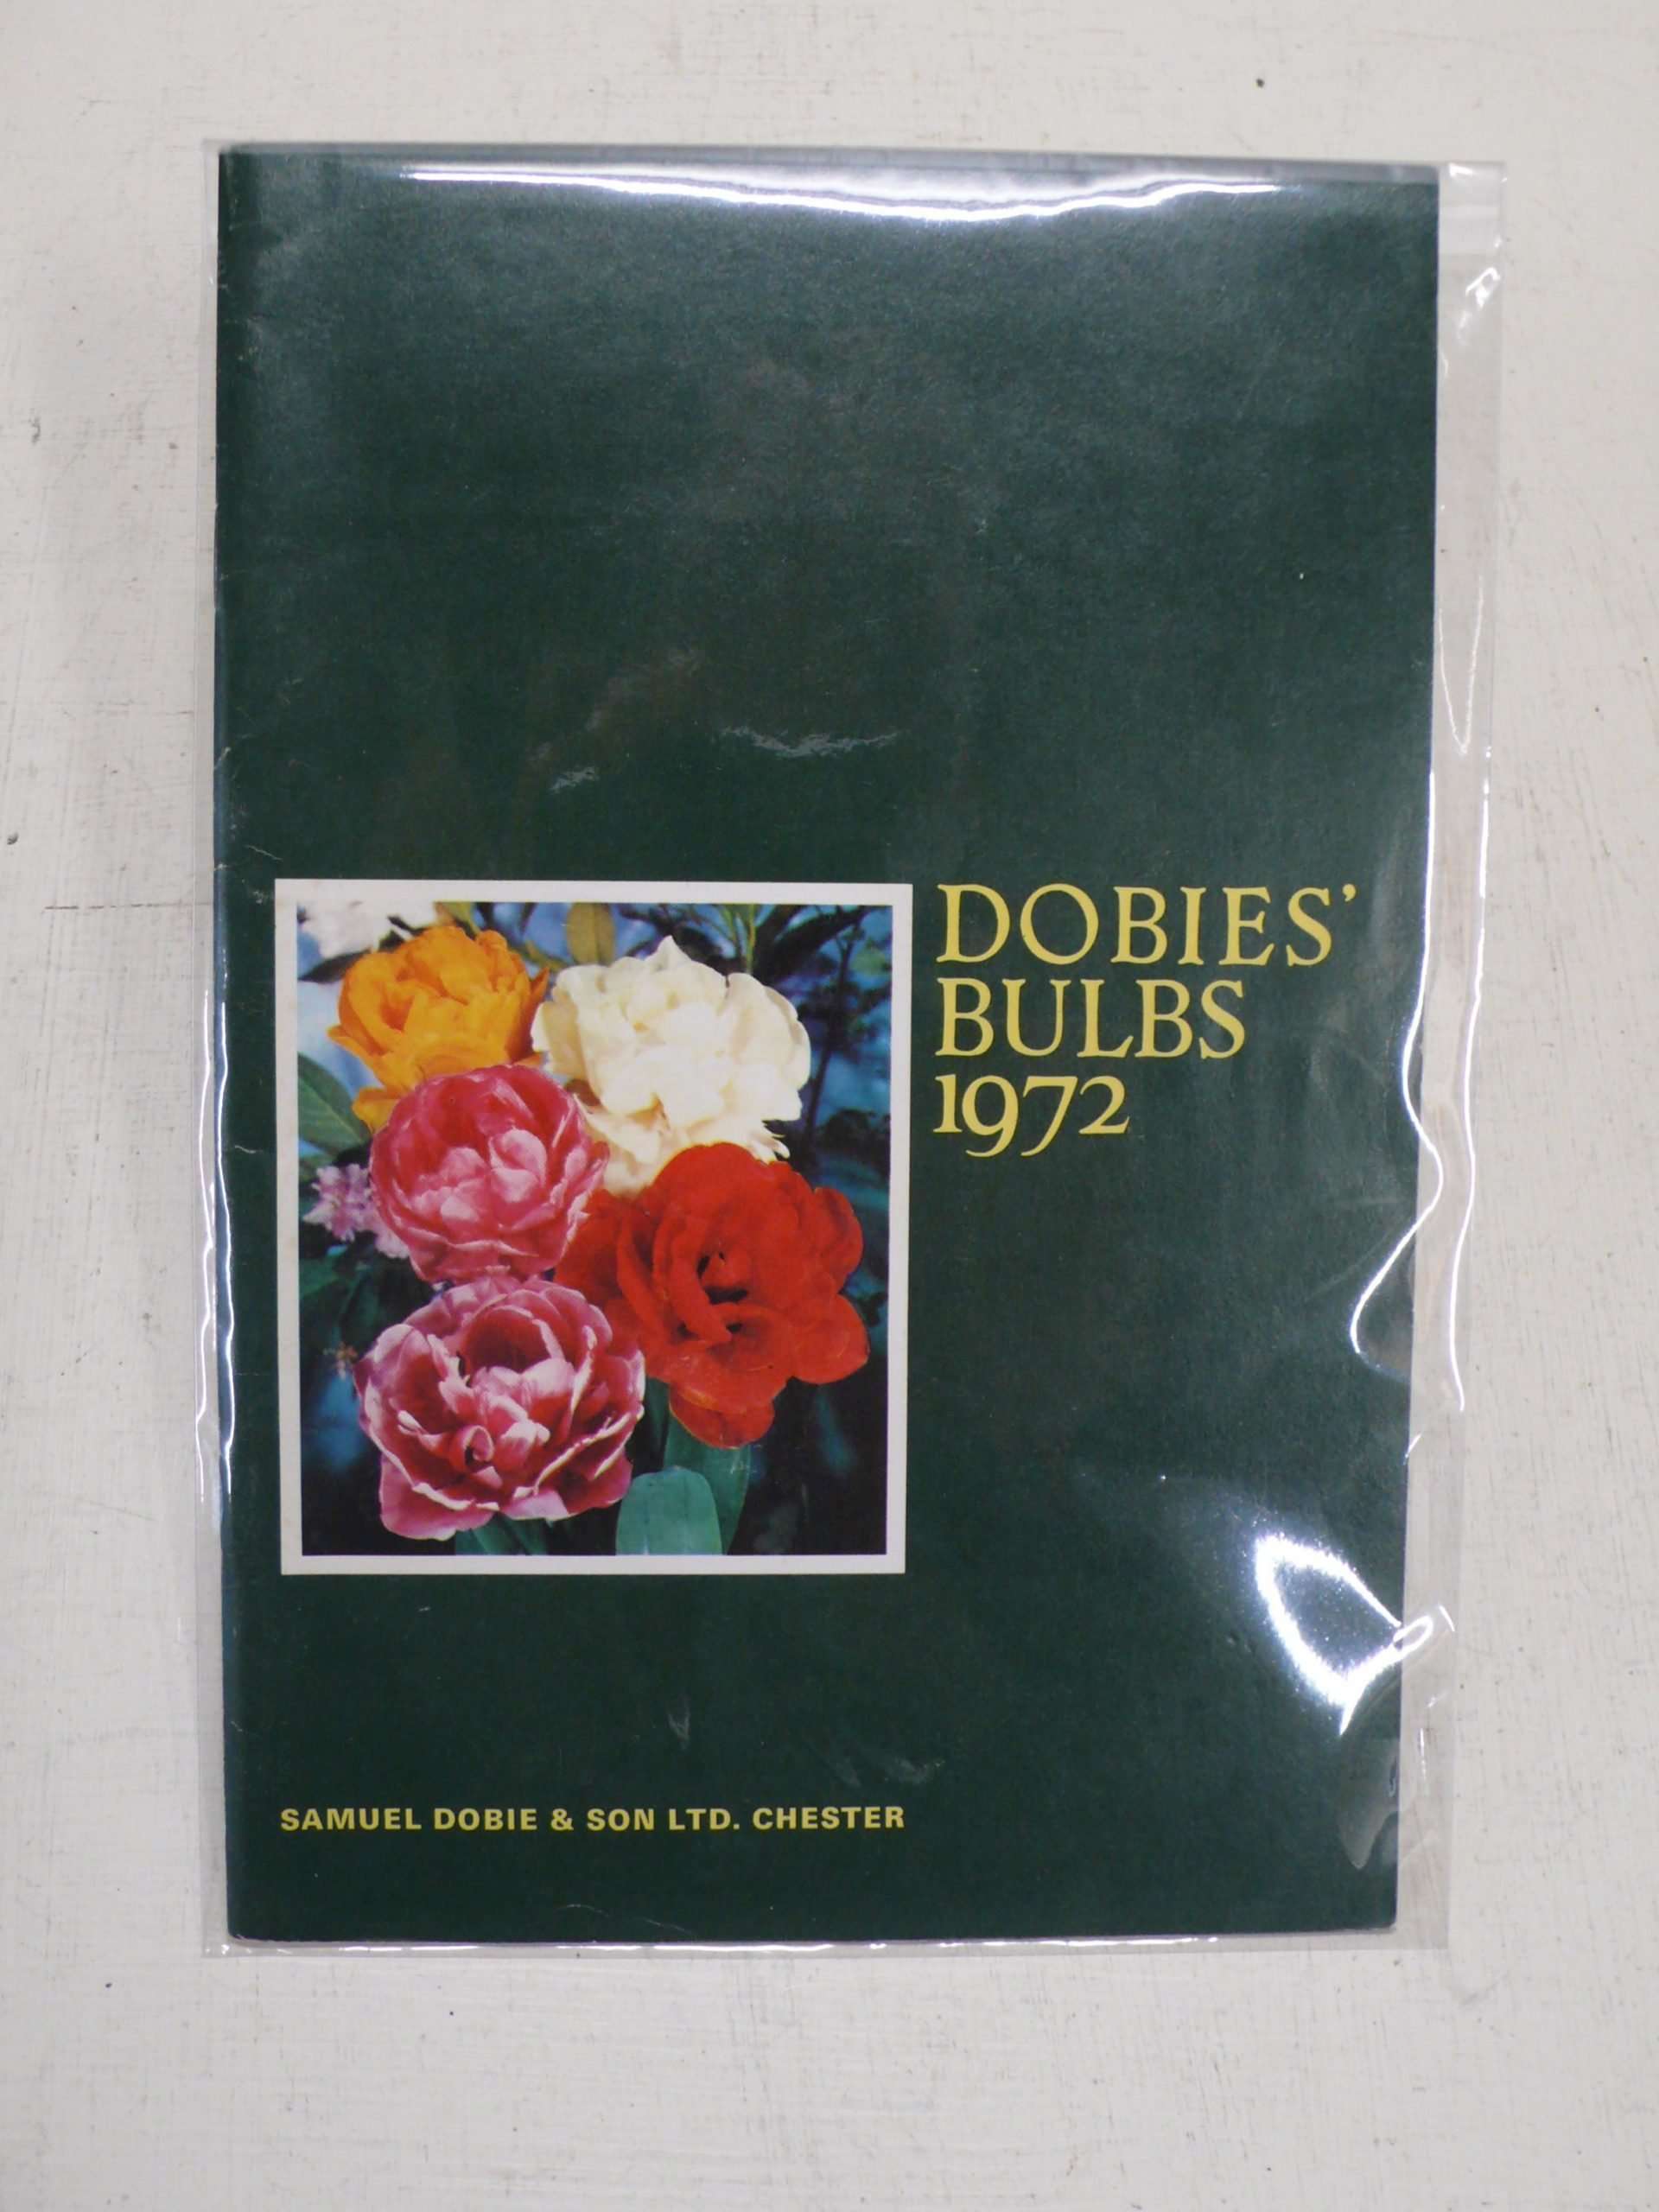 Dobies Bulbs Catalogue, 1974